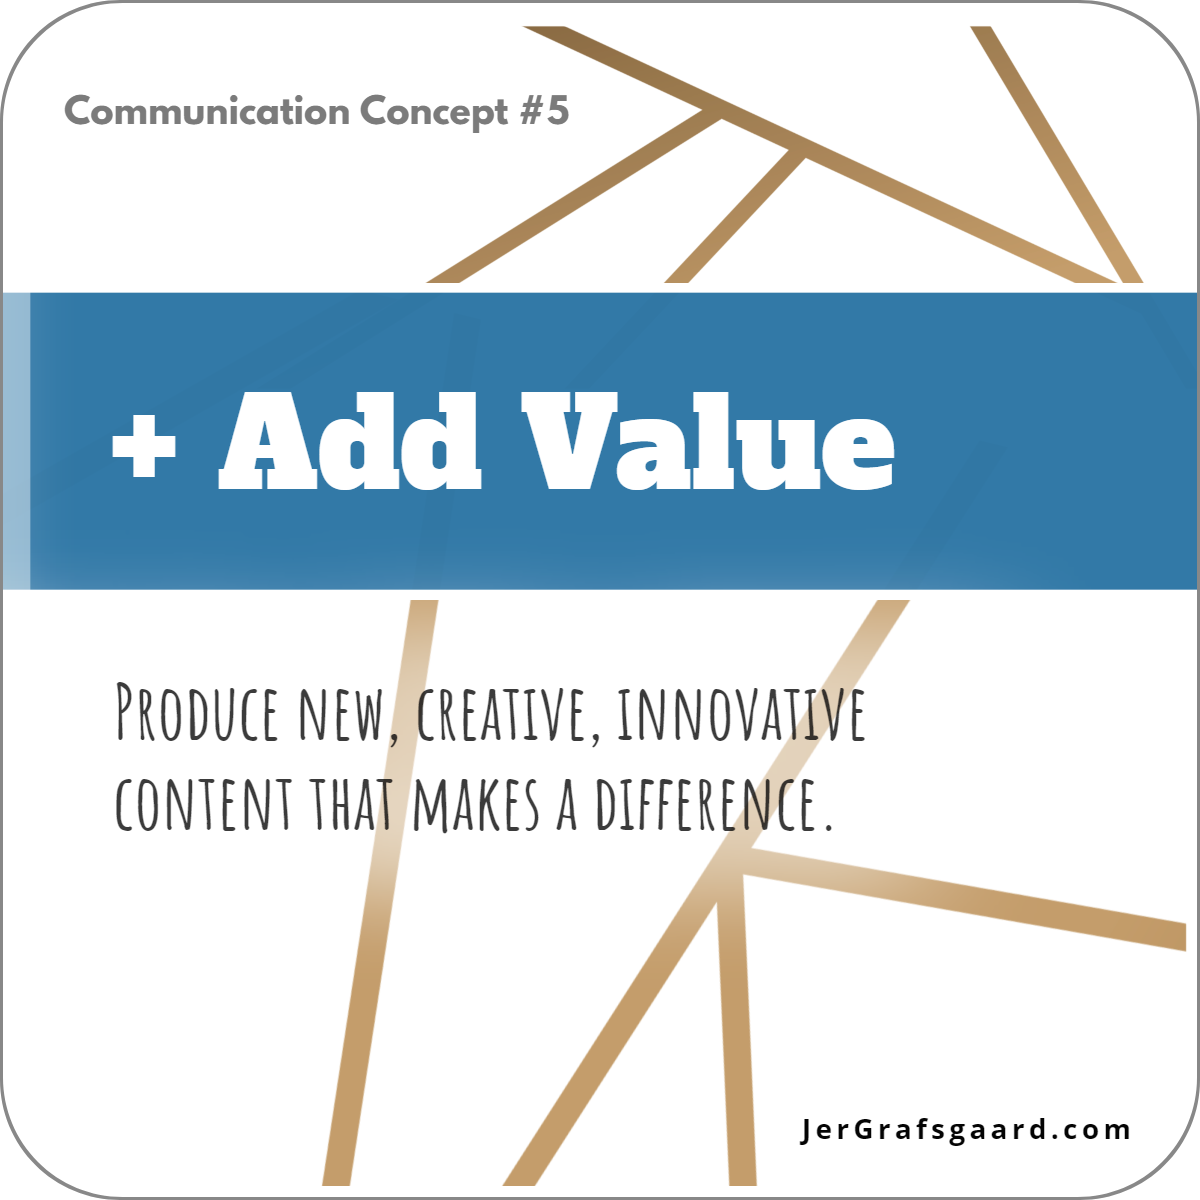 Communication Concept #5